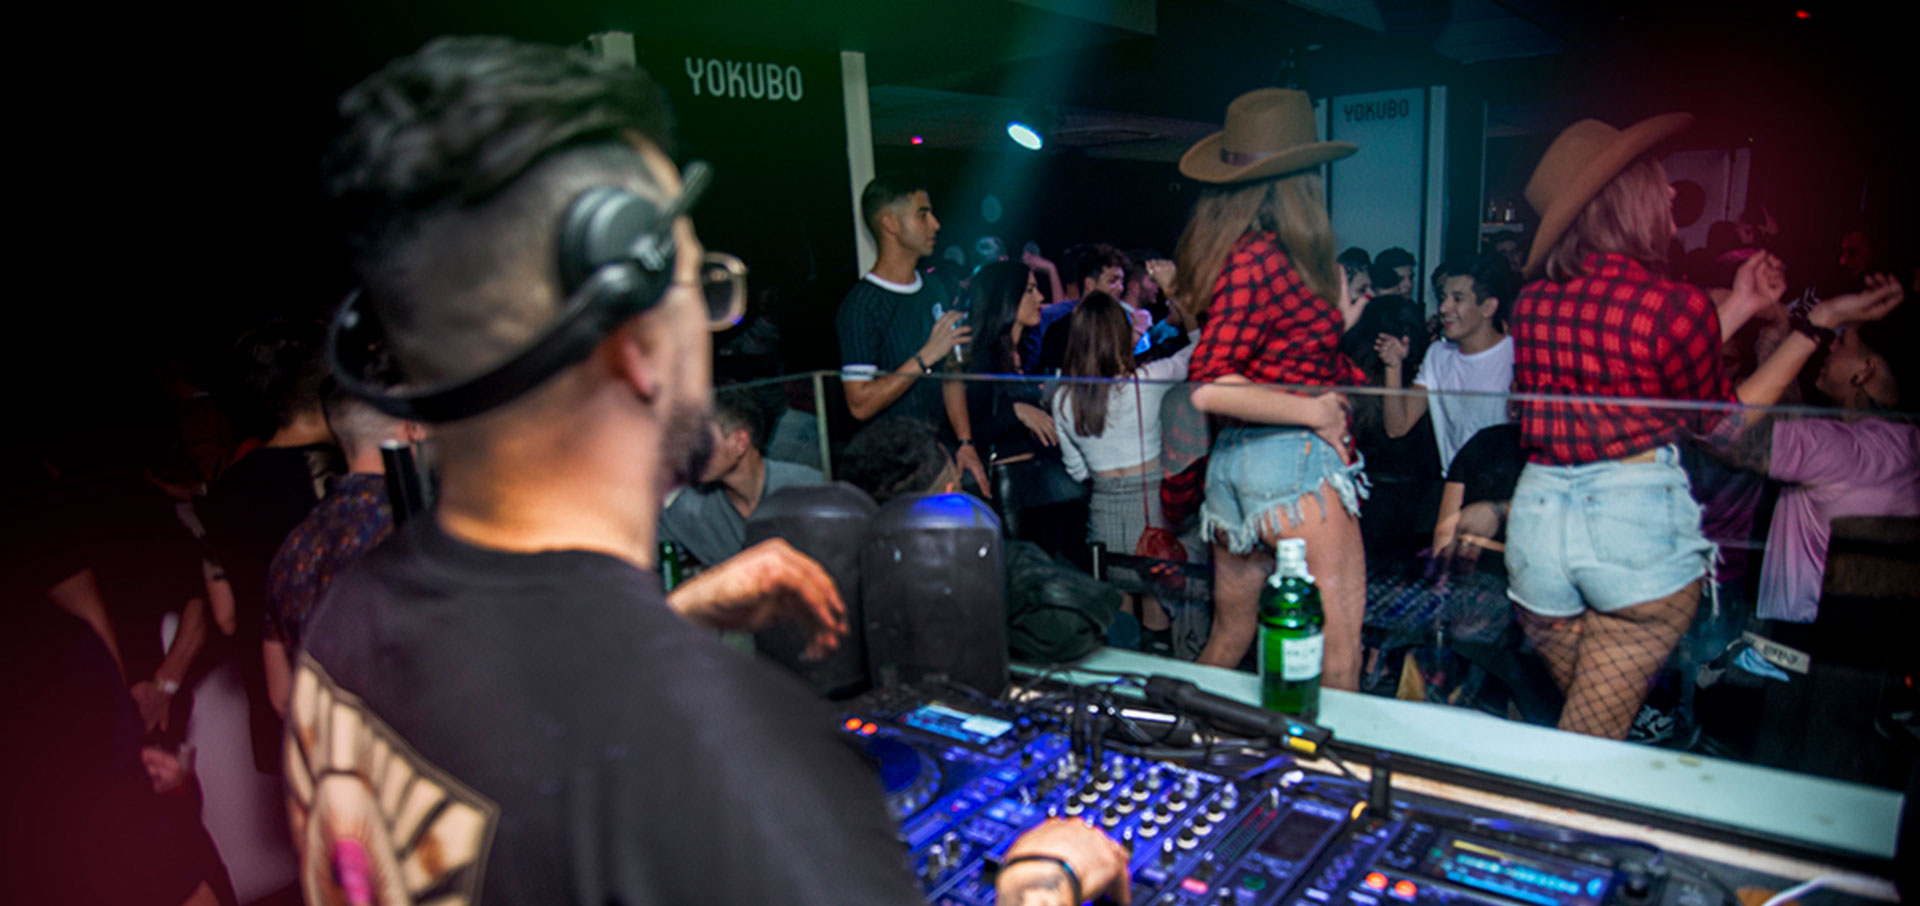 Biografía de DJMai. We Rule Ibiza en Yokubo Club